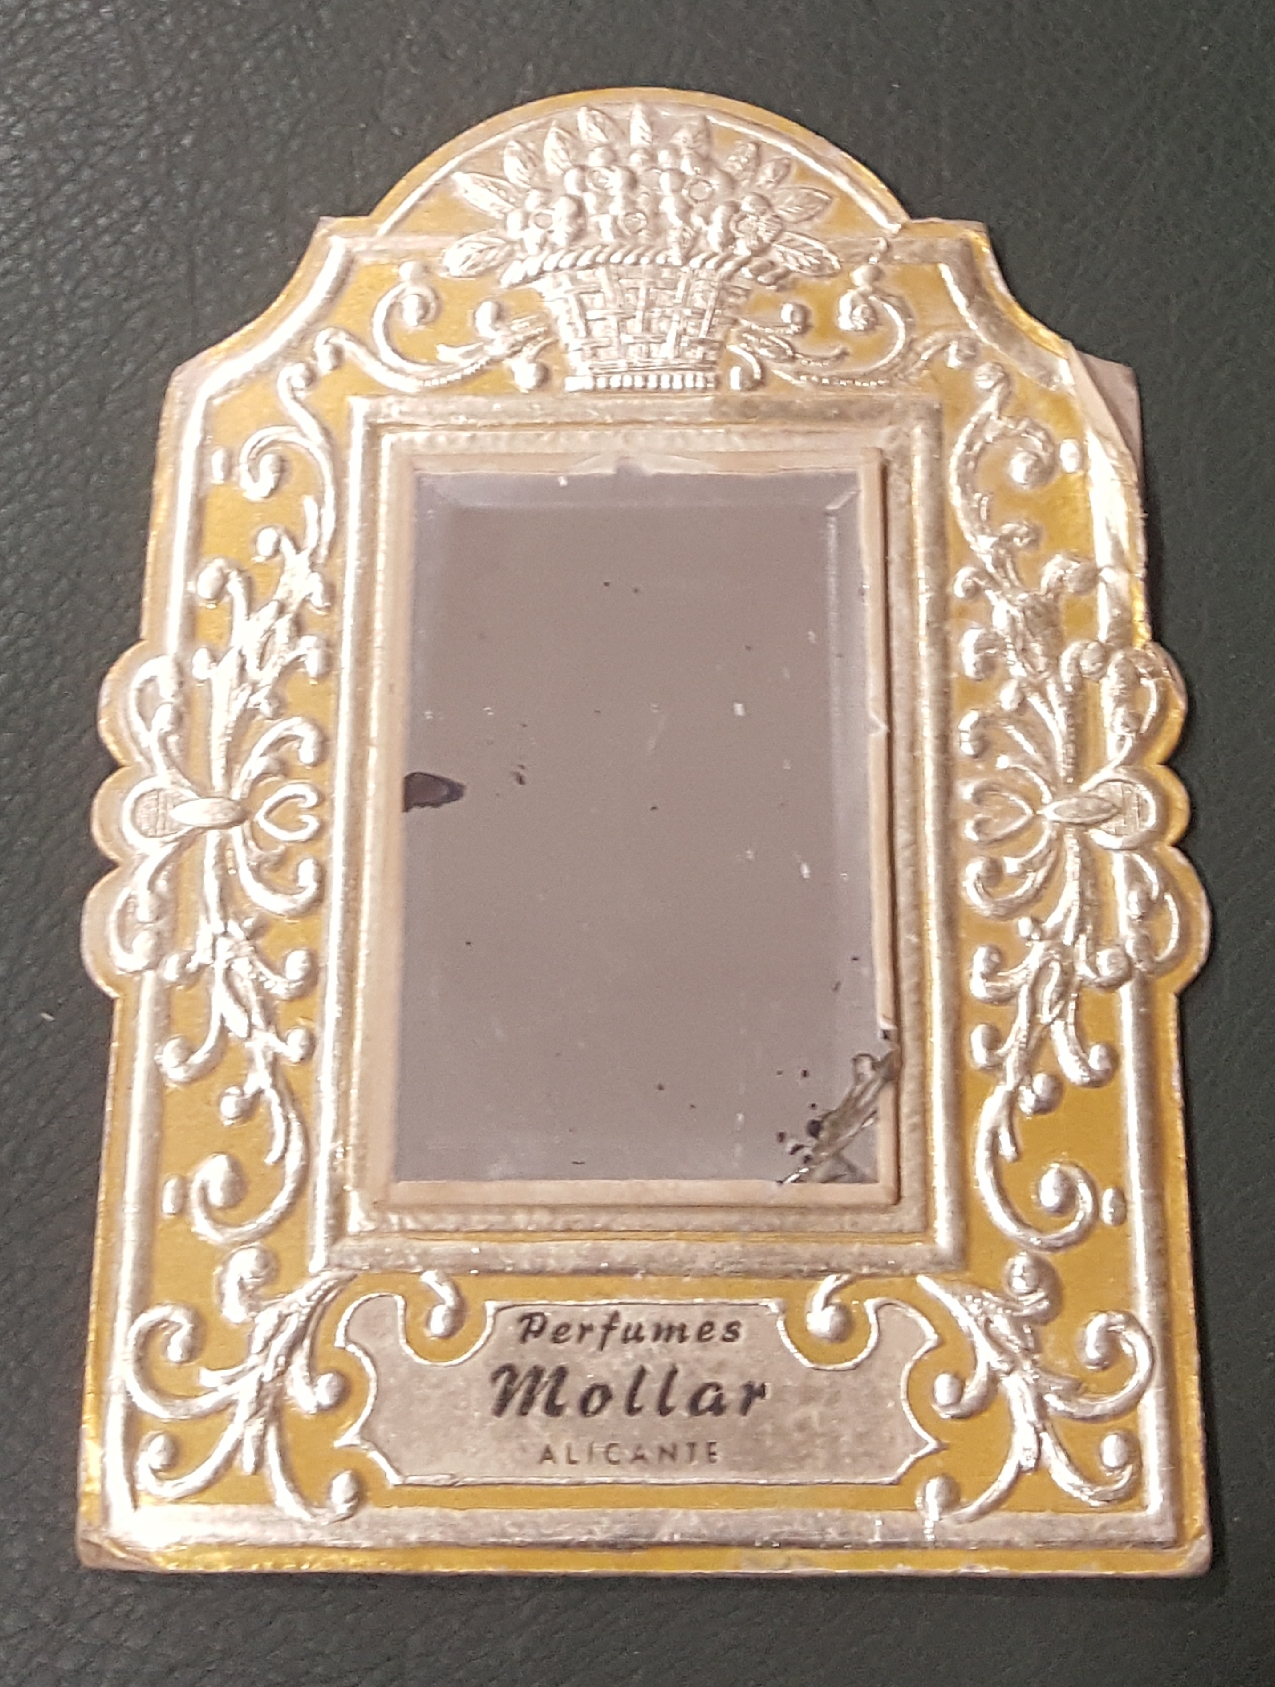 Perfumes Mollar. Alicante. Espejo (14,5x10) de Publicidad. Años 40-50